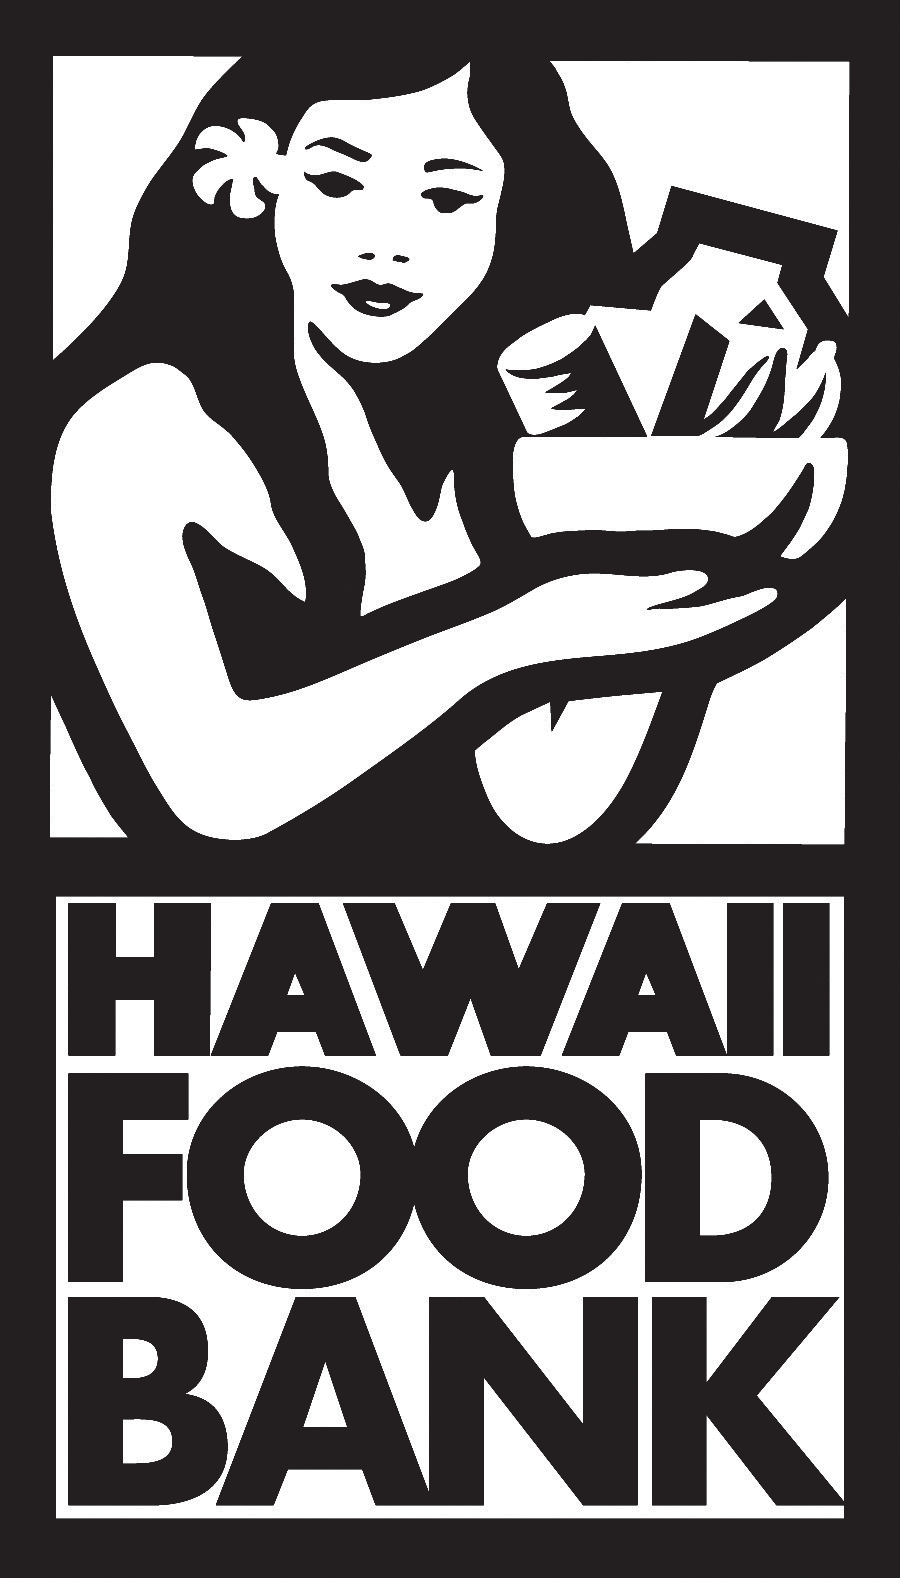 Hawaii Foodbank